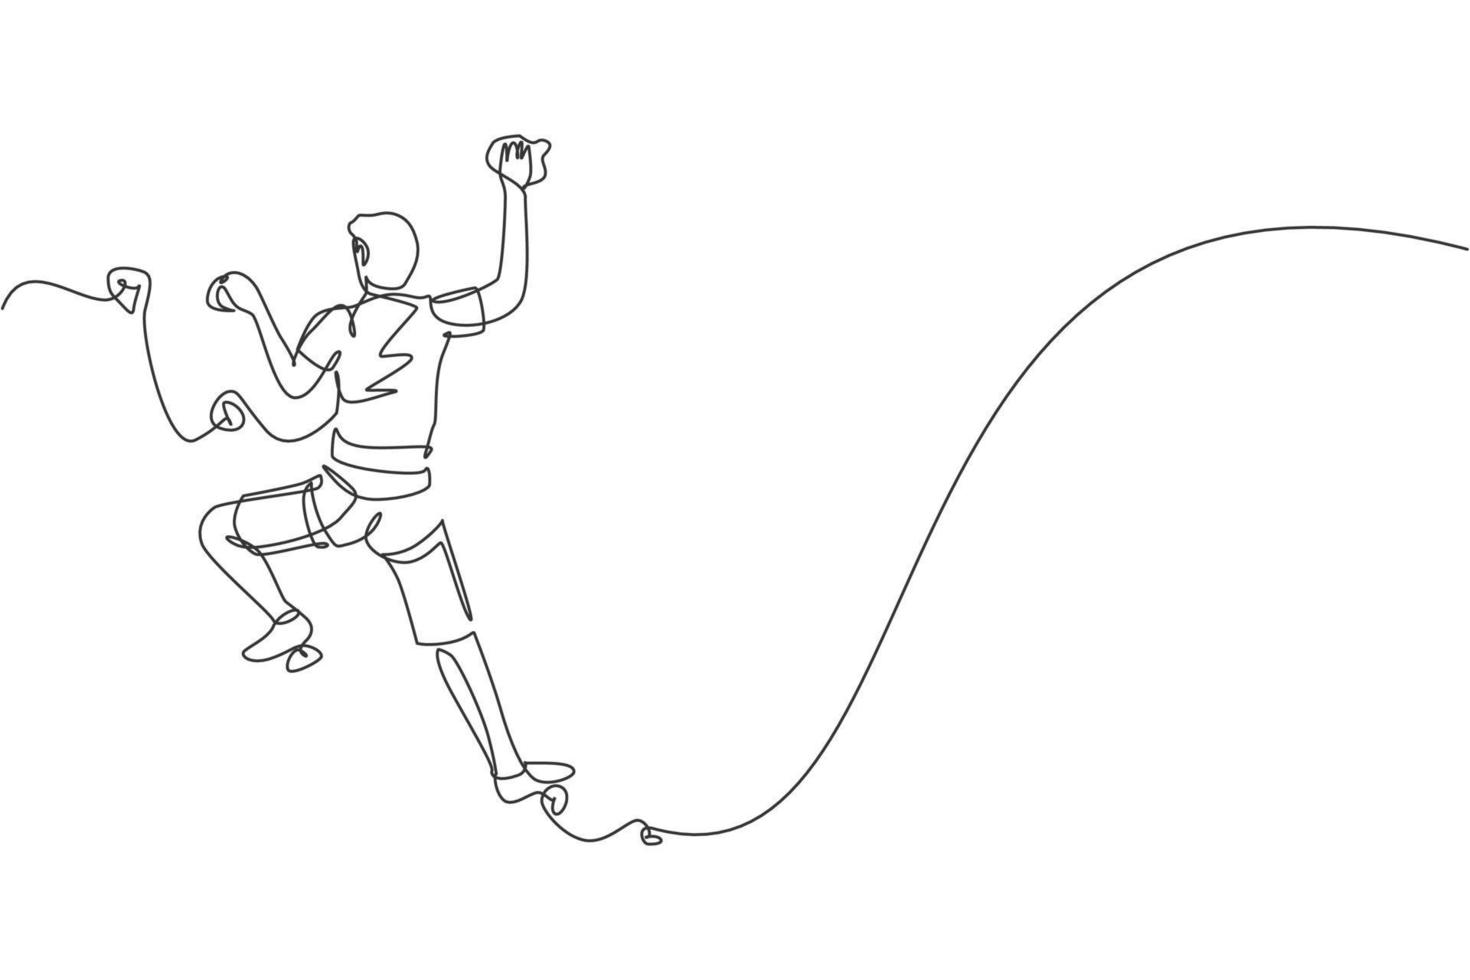 um desenho de linha contínua do homem jovem alpinista de bravura prática pendendo sobre a montanha do penhasco de rocha com corda de segurança. conceito de esporte radical perigoso. ilustração em vetor design de desenho de linha única dinâmica